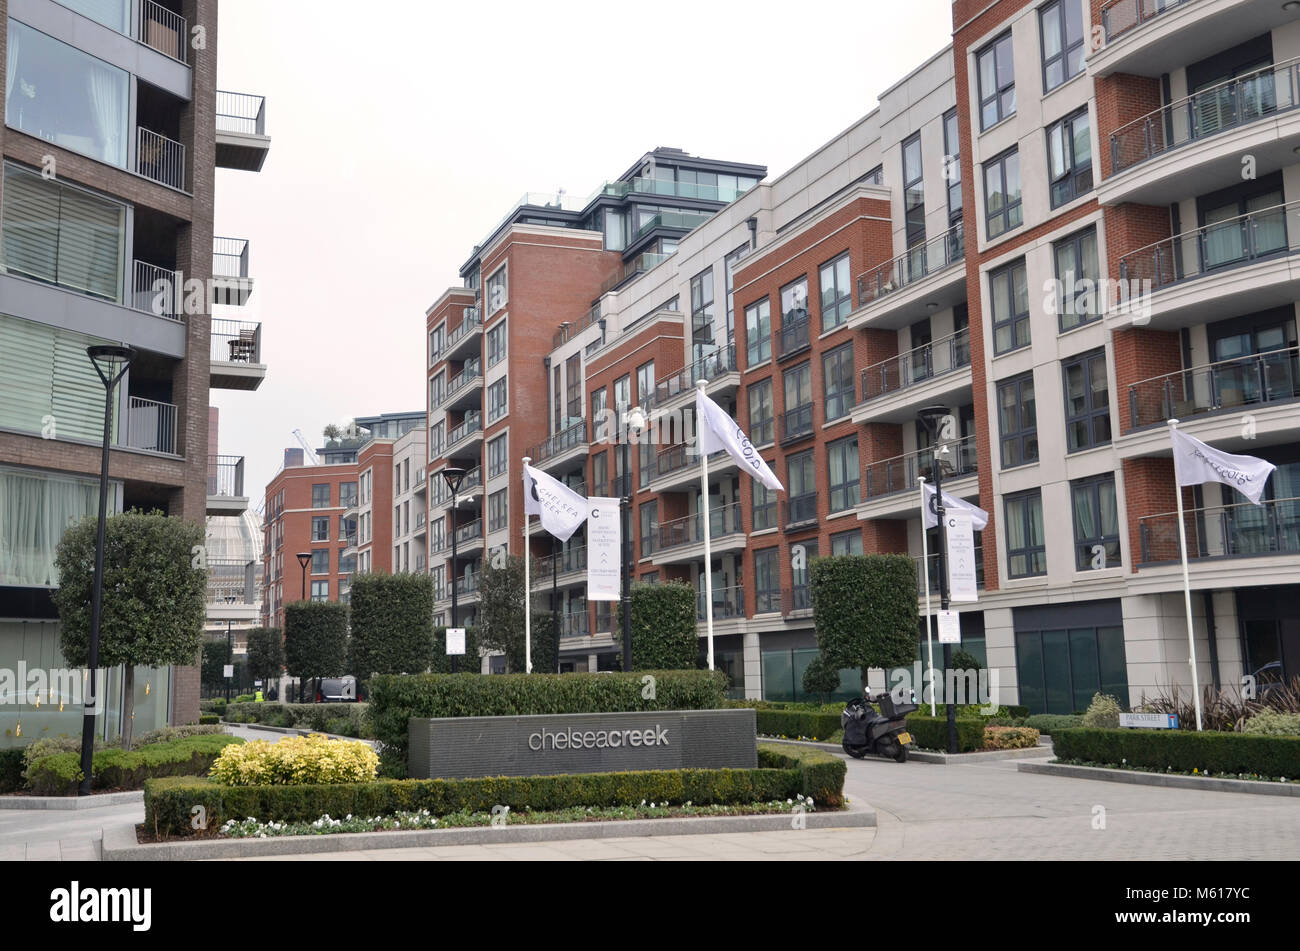 Die luxuriöse Wohnung Entwicklung bei Chelsea Creek in West London Stockfoto